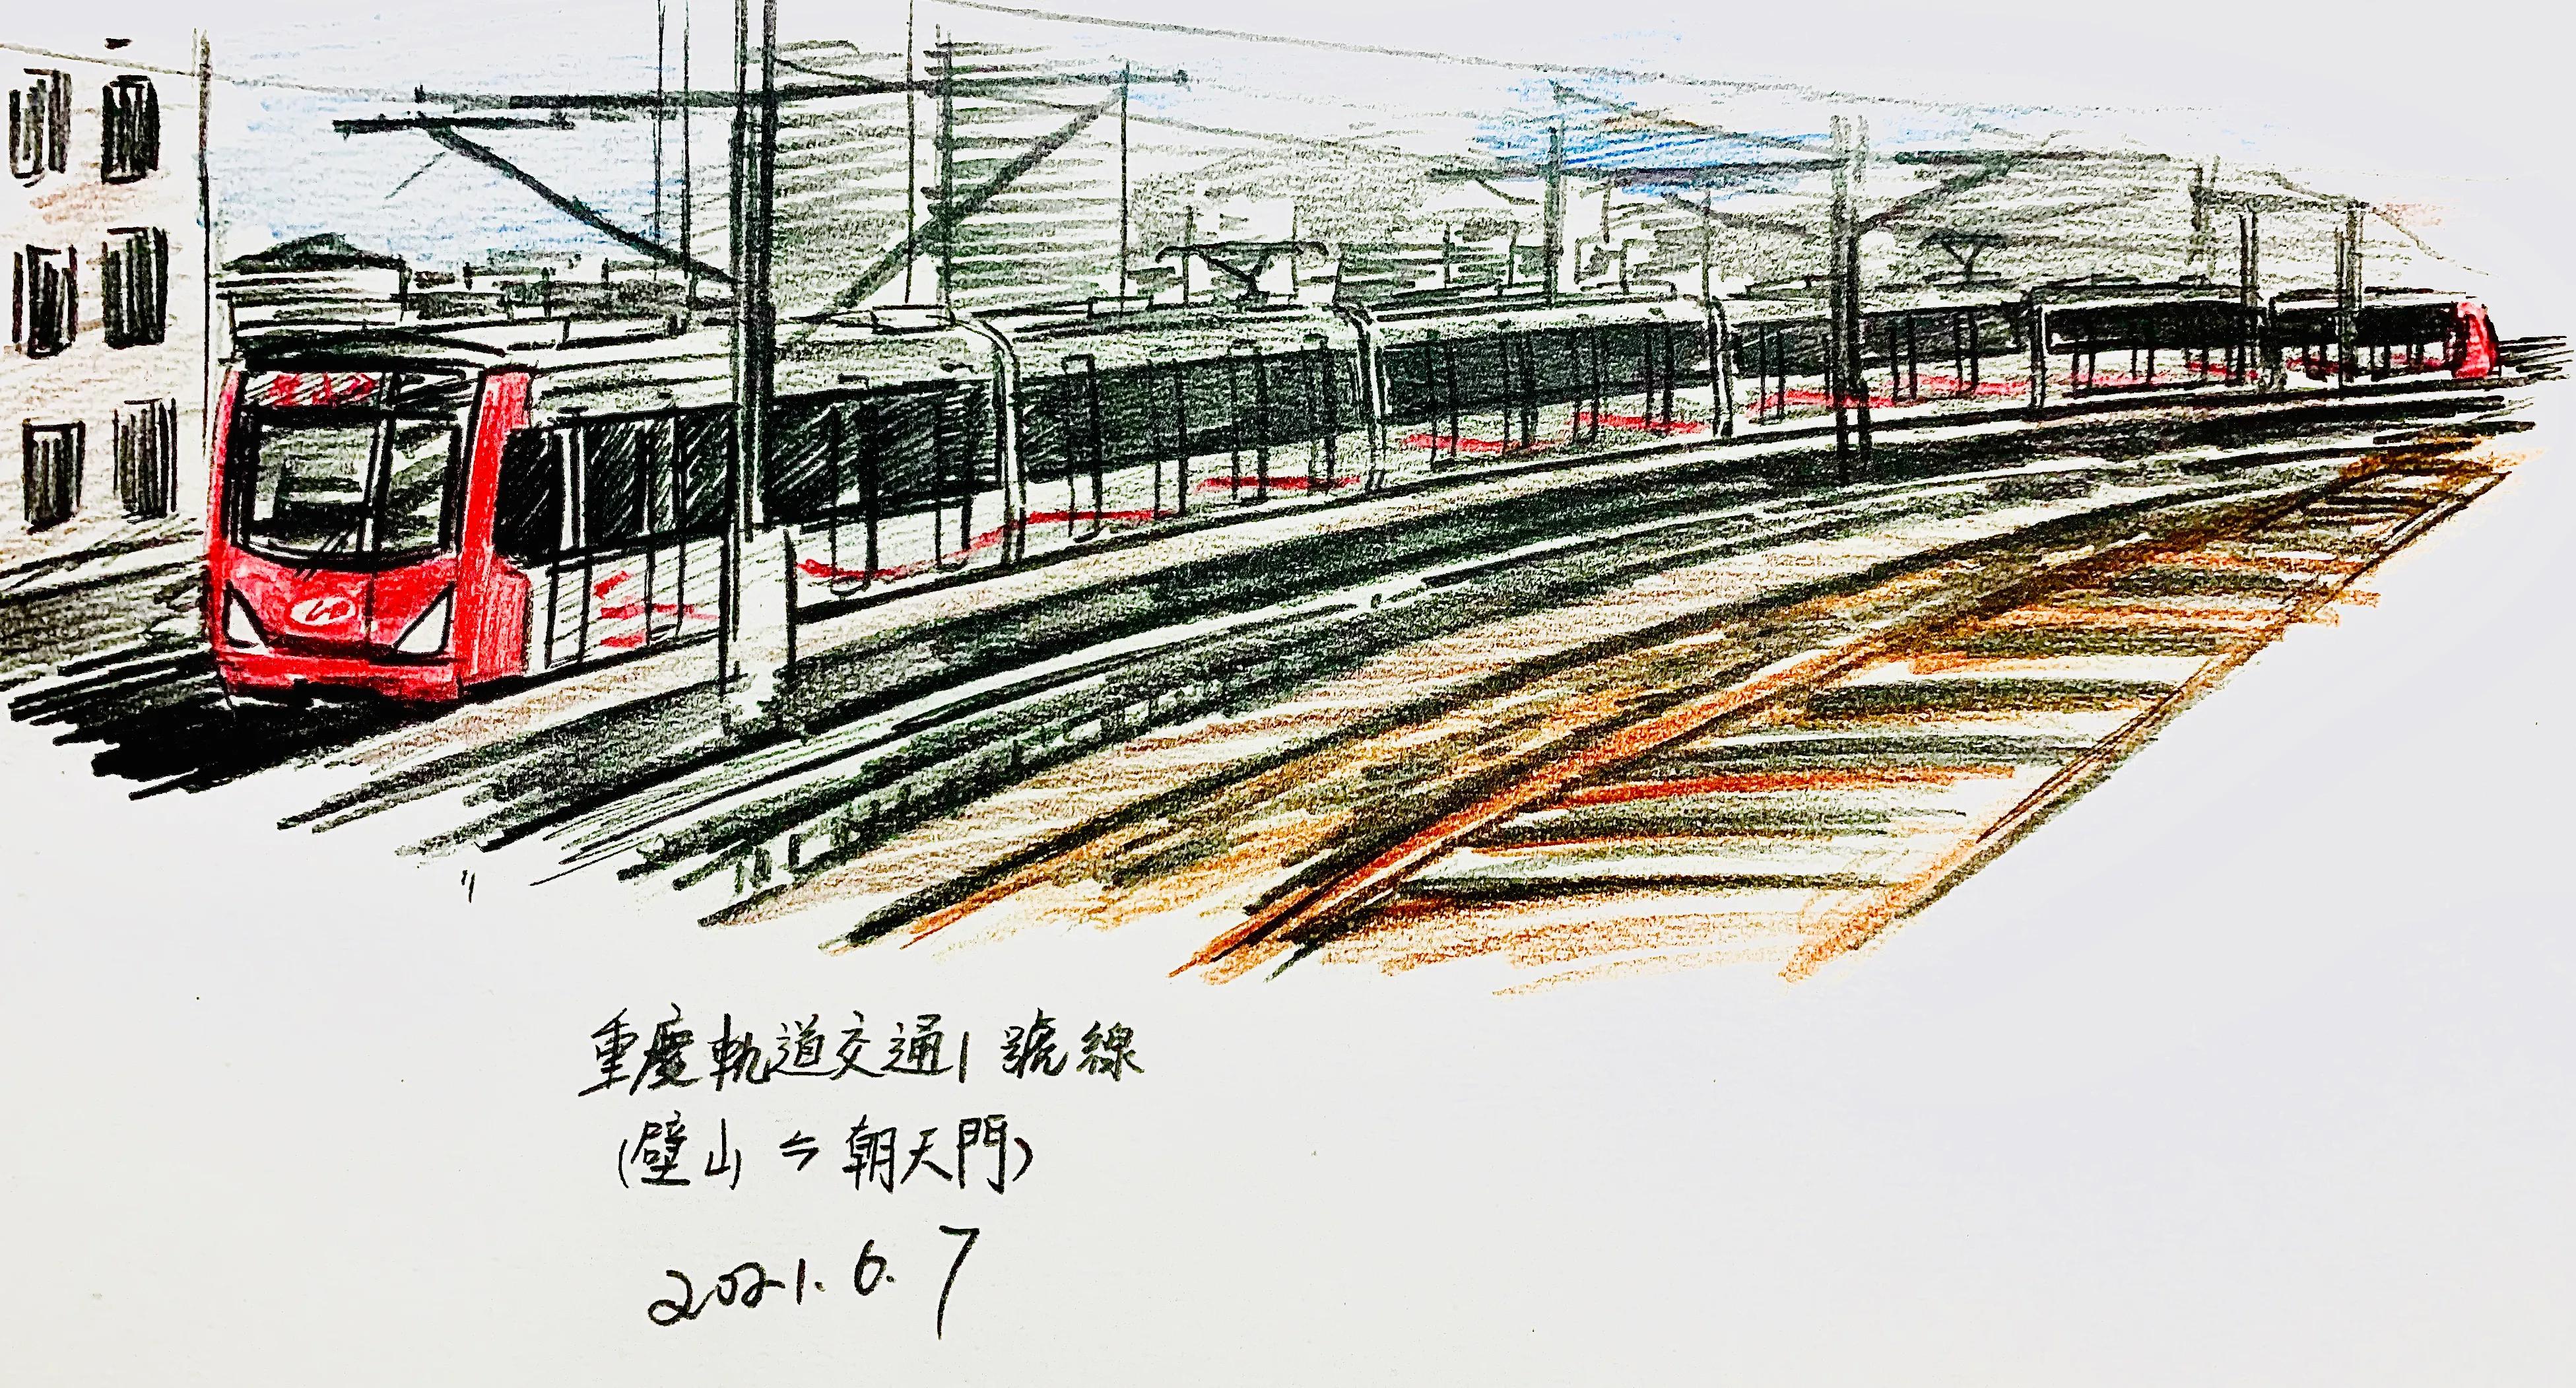 「重庆轨道交通」小科普——重庆轨道交通1号线